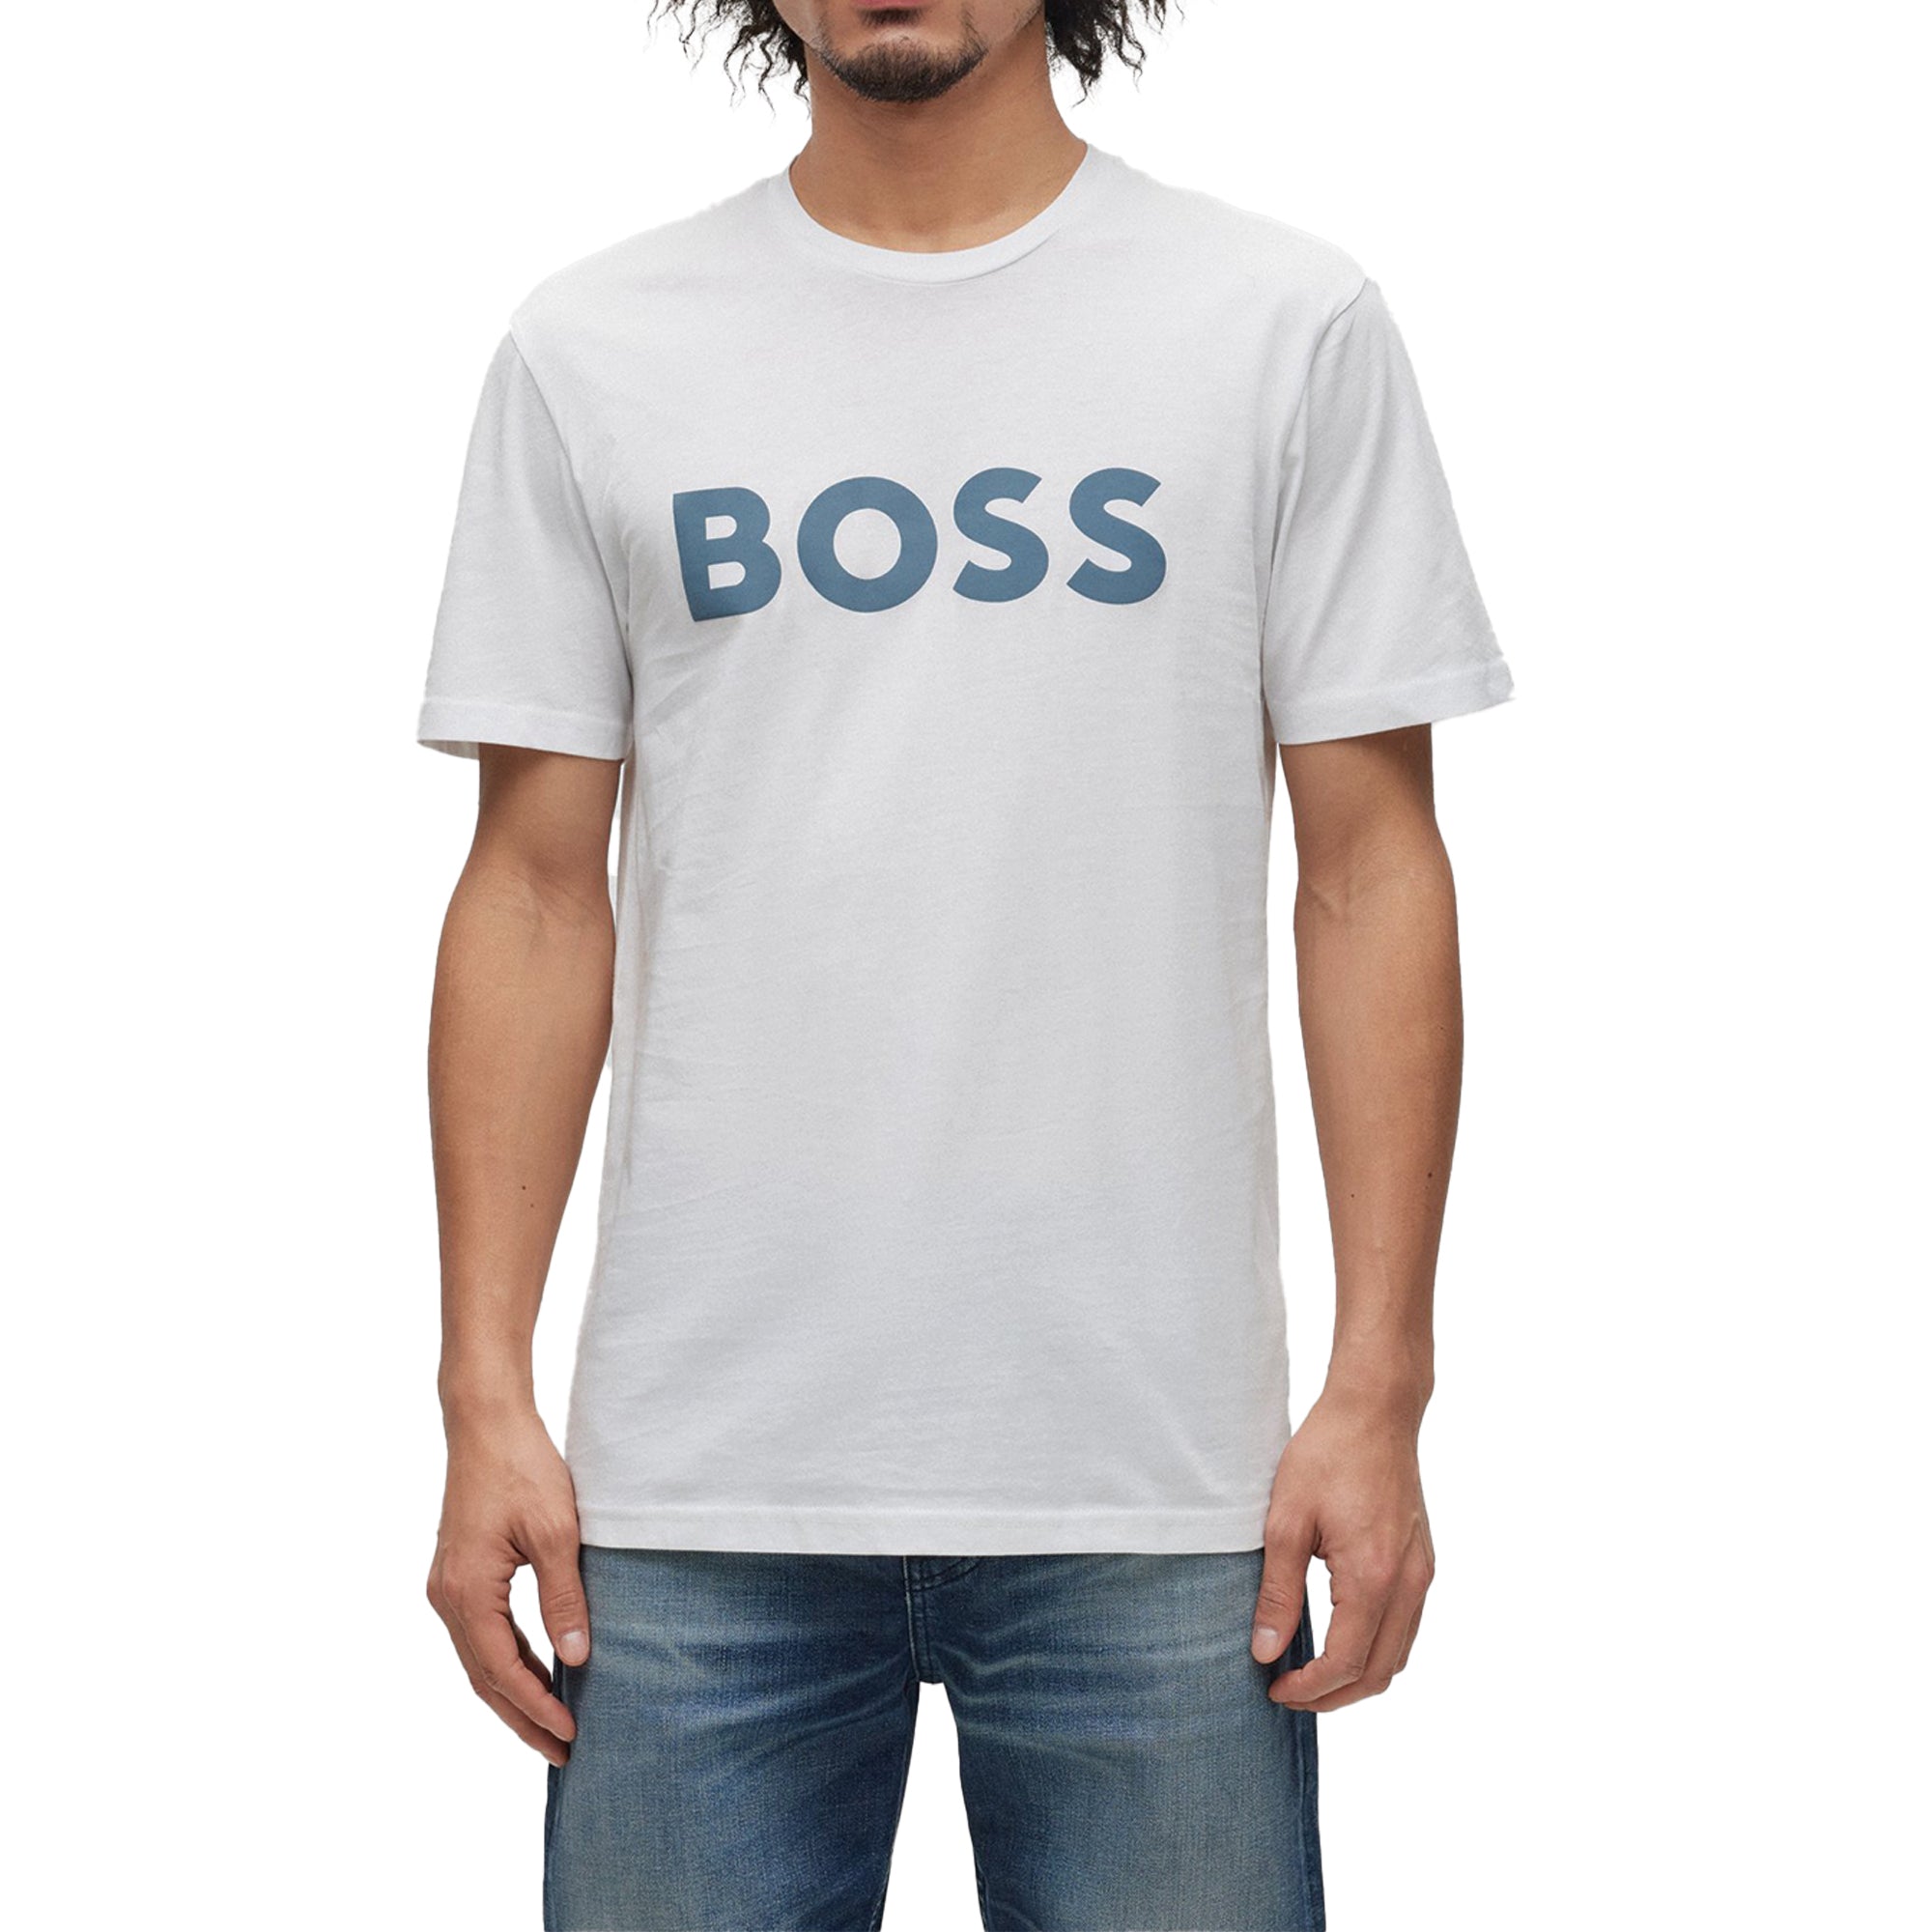 Boss Thinking 1 Logo T-Shirt - Natural